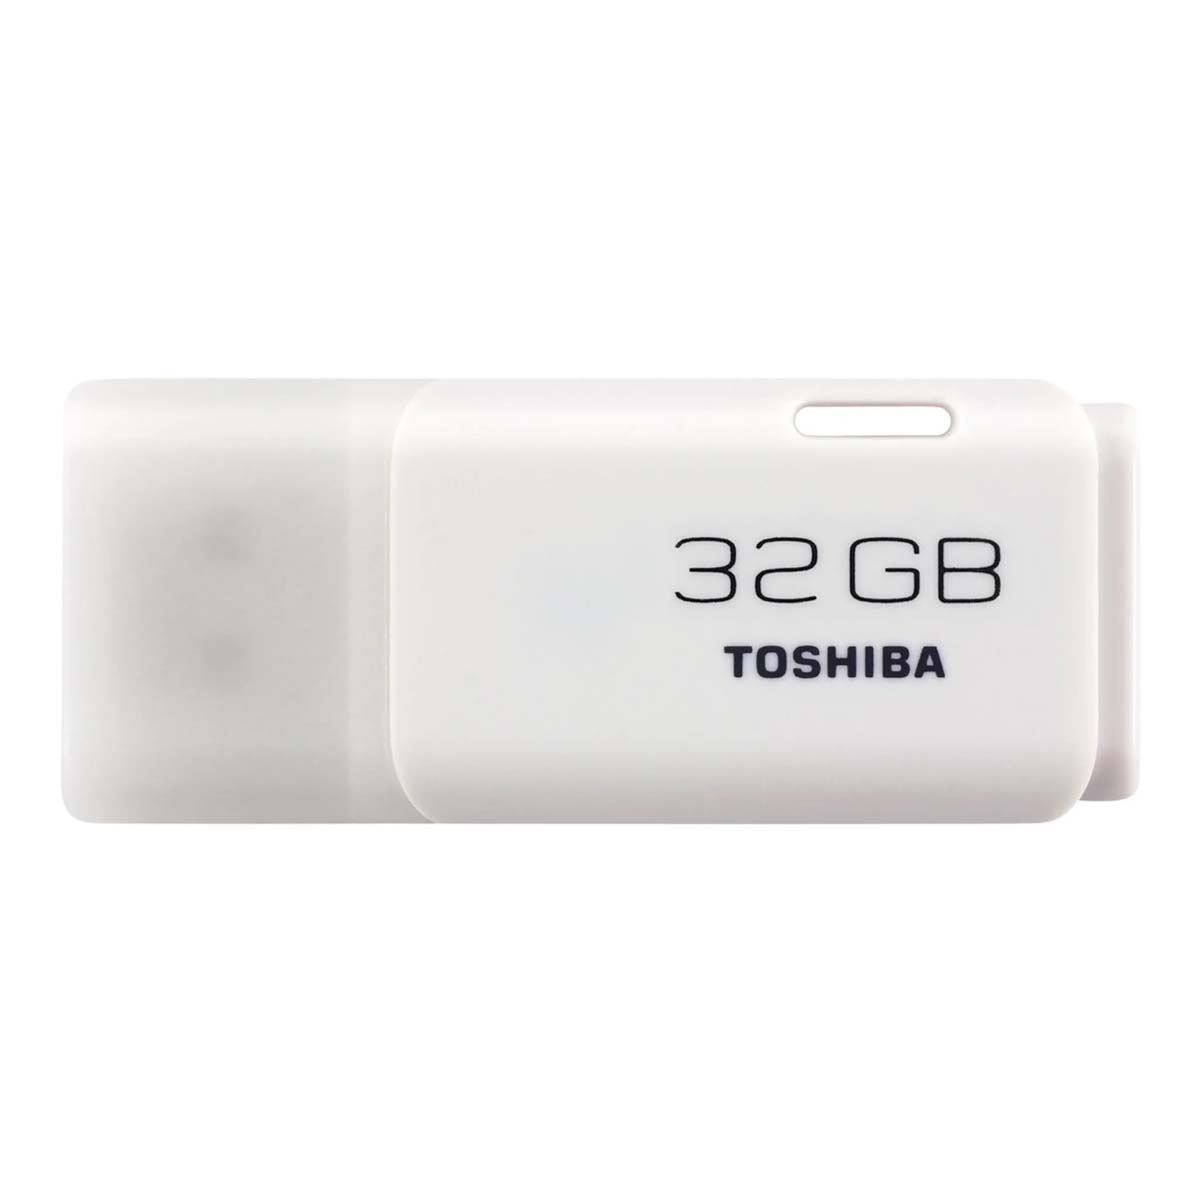 USB TOSHIBA Memory 32833, Stick, Stick GB 32